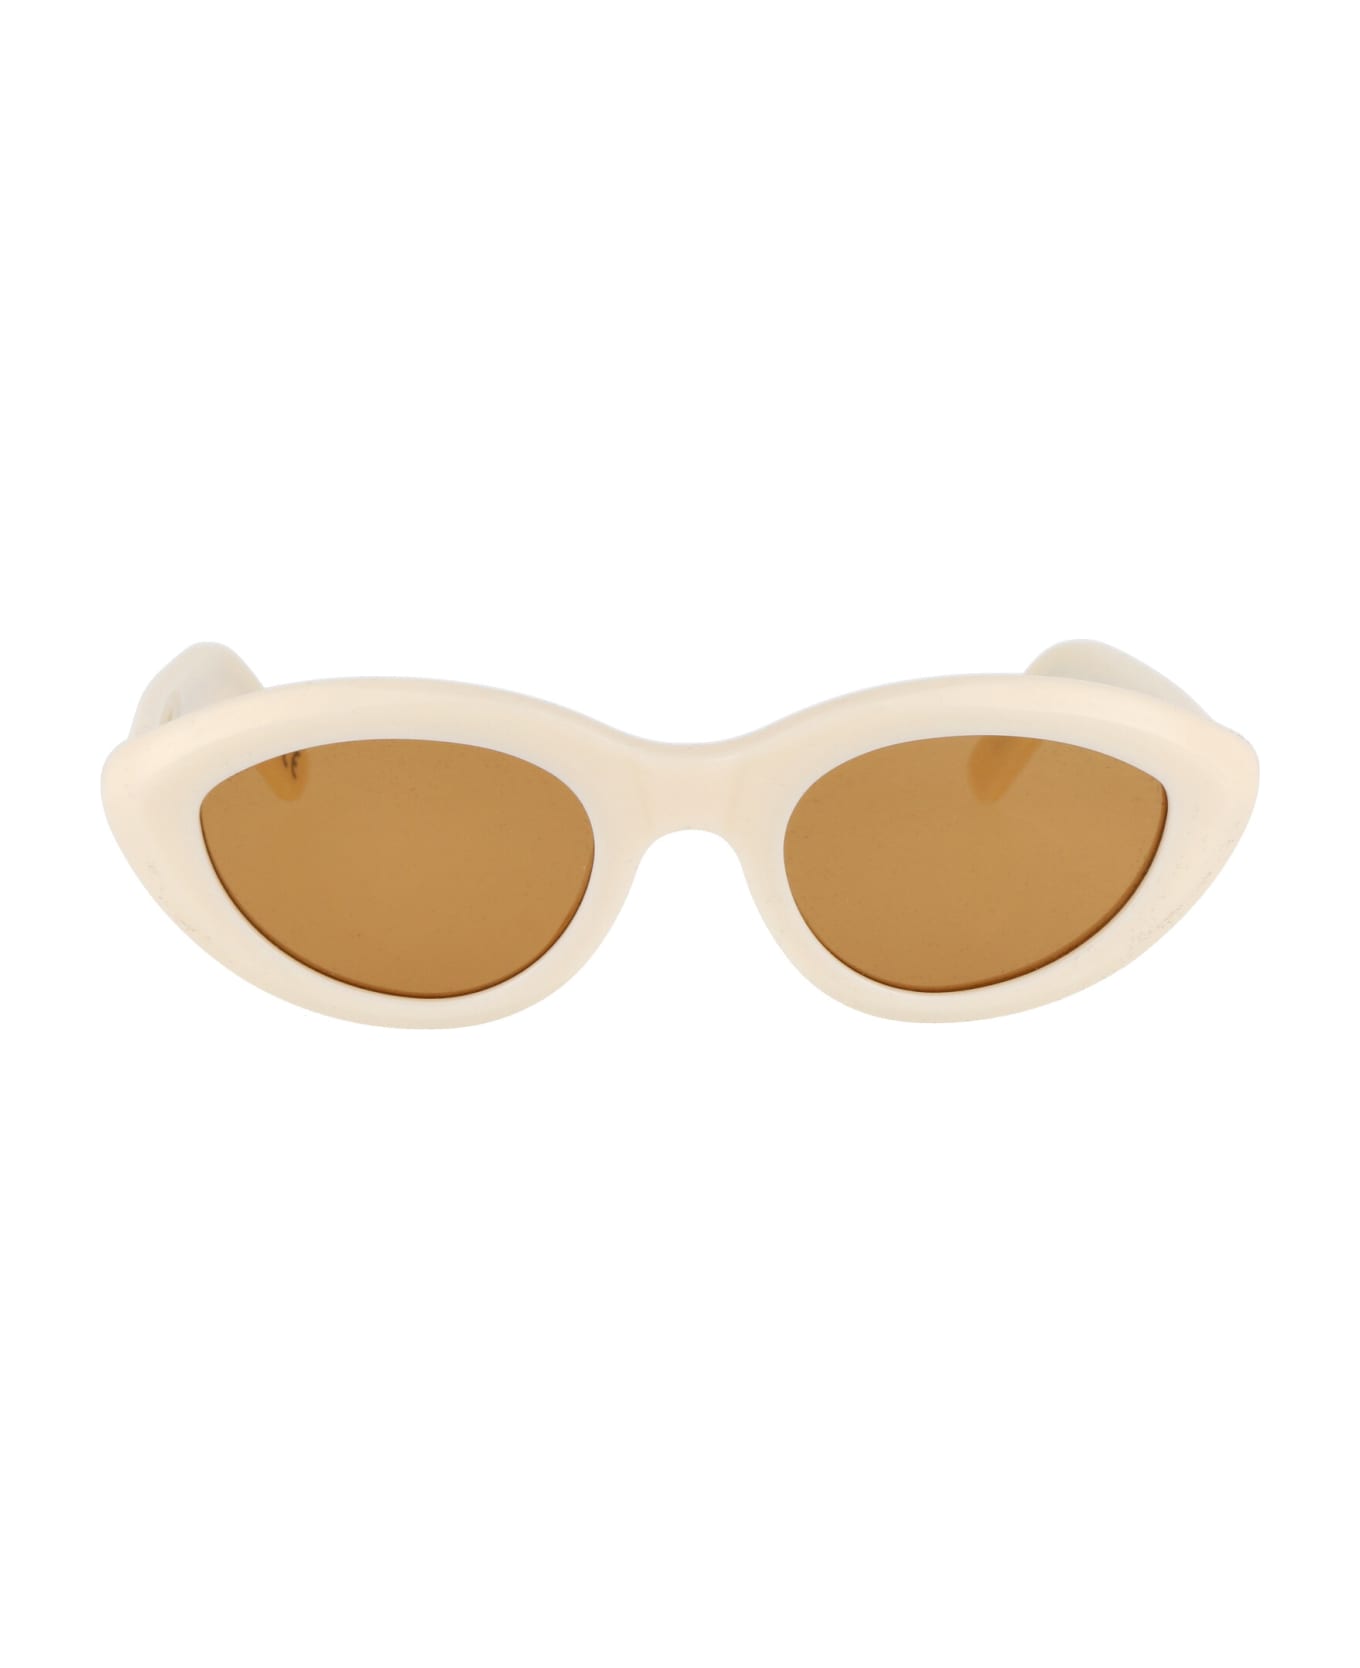 RETROSUPERFUTURE Cocca Sunglasses - PANNA サングラス